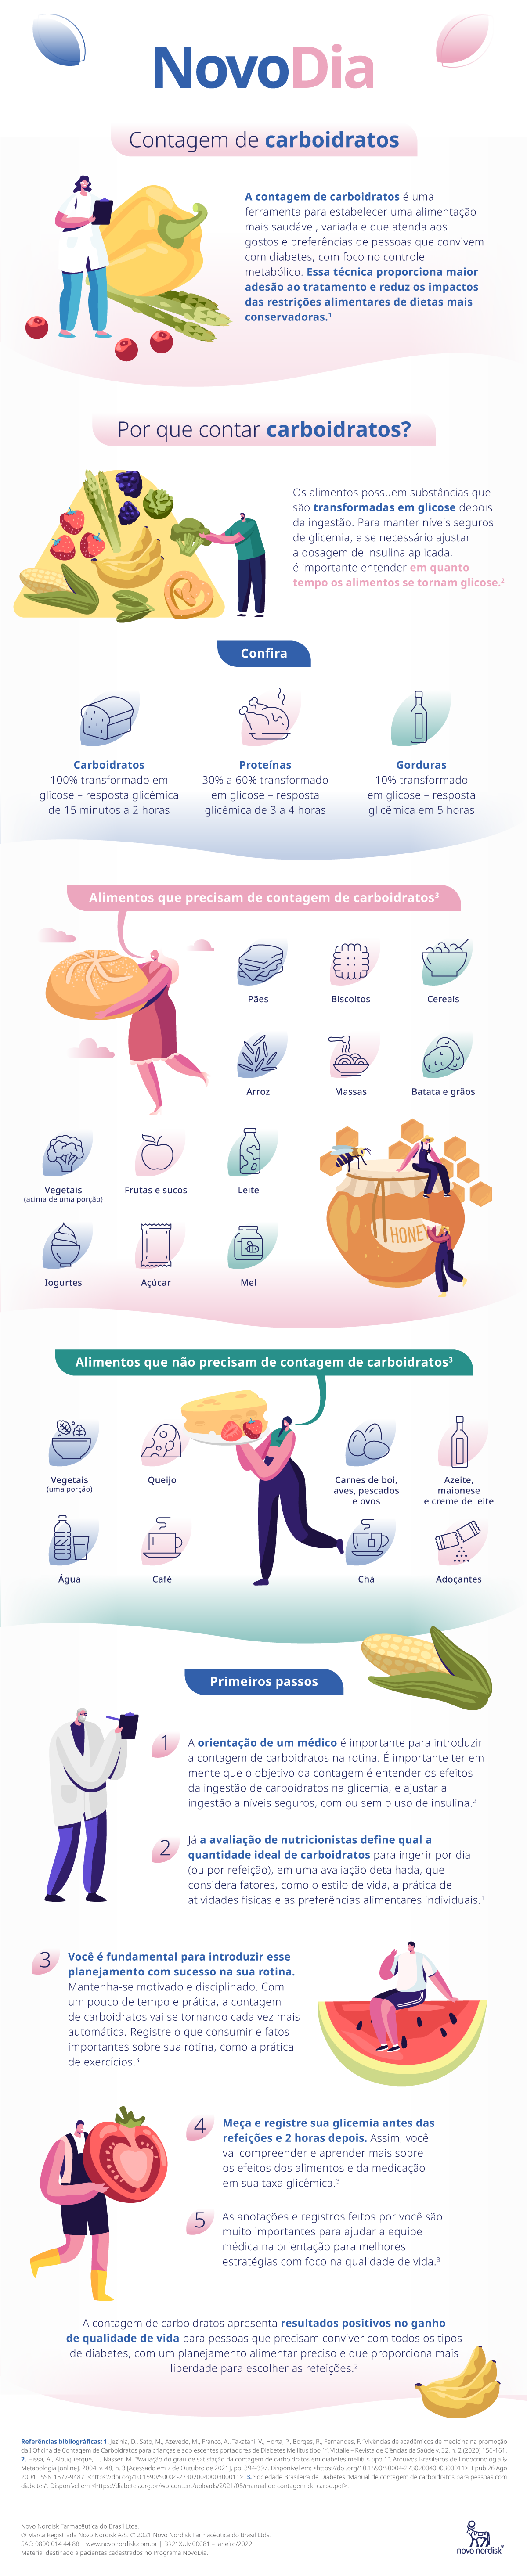 Infográfico sobre contagem de carboidratos, com ilustrações de um profissional da saúde e alguns alimentos.